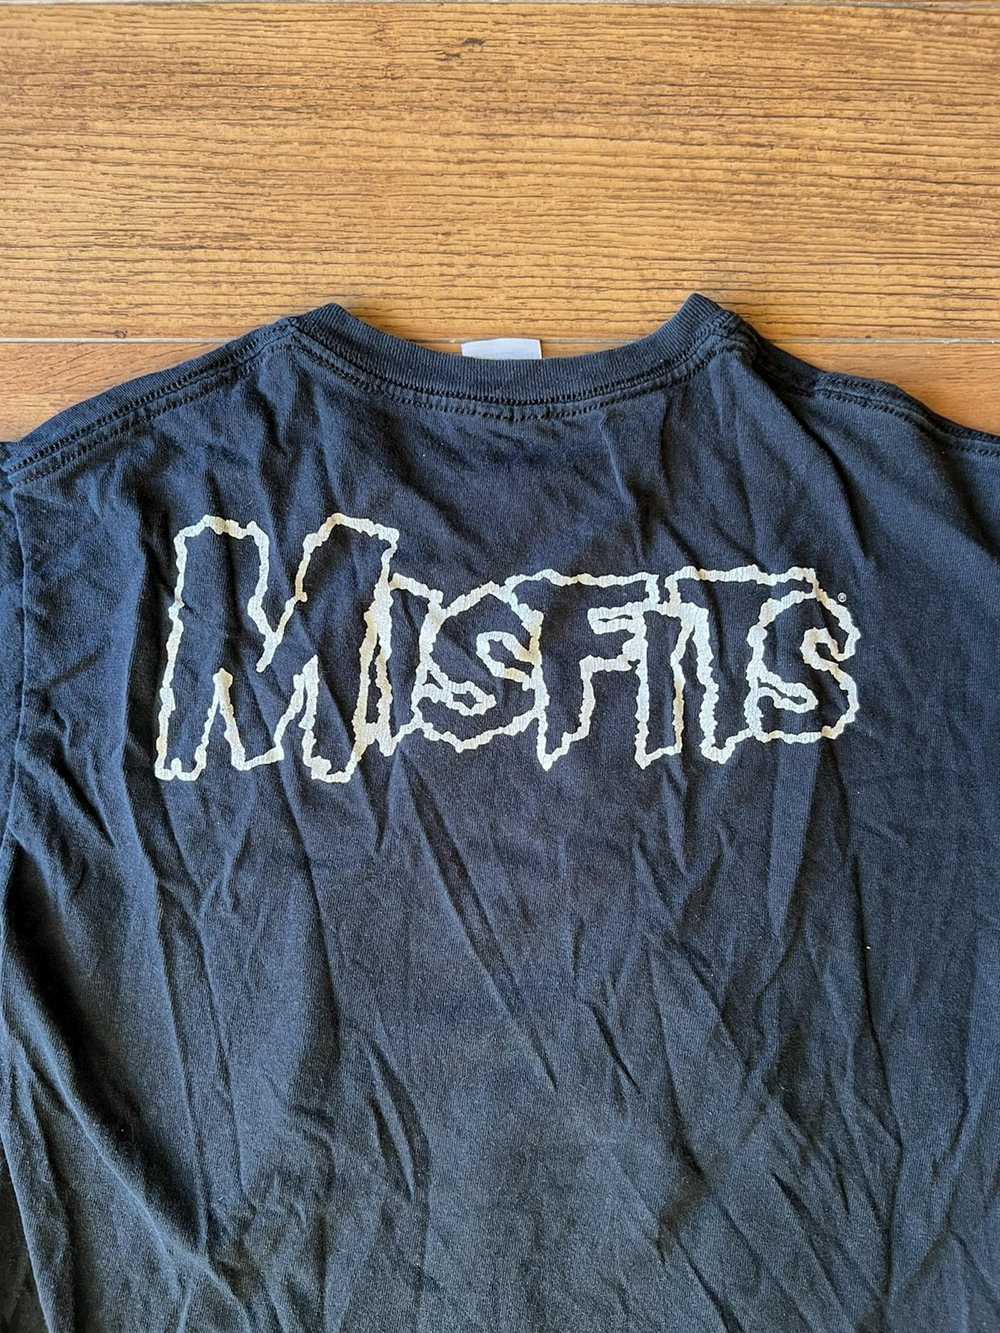 Misfits × Vintage misfits vintage t-shirt - image 4